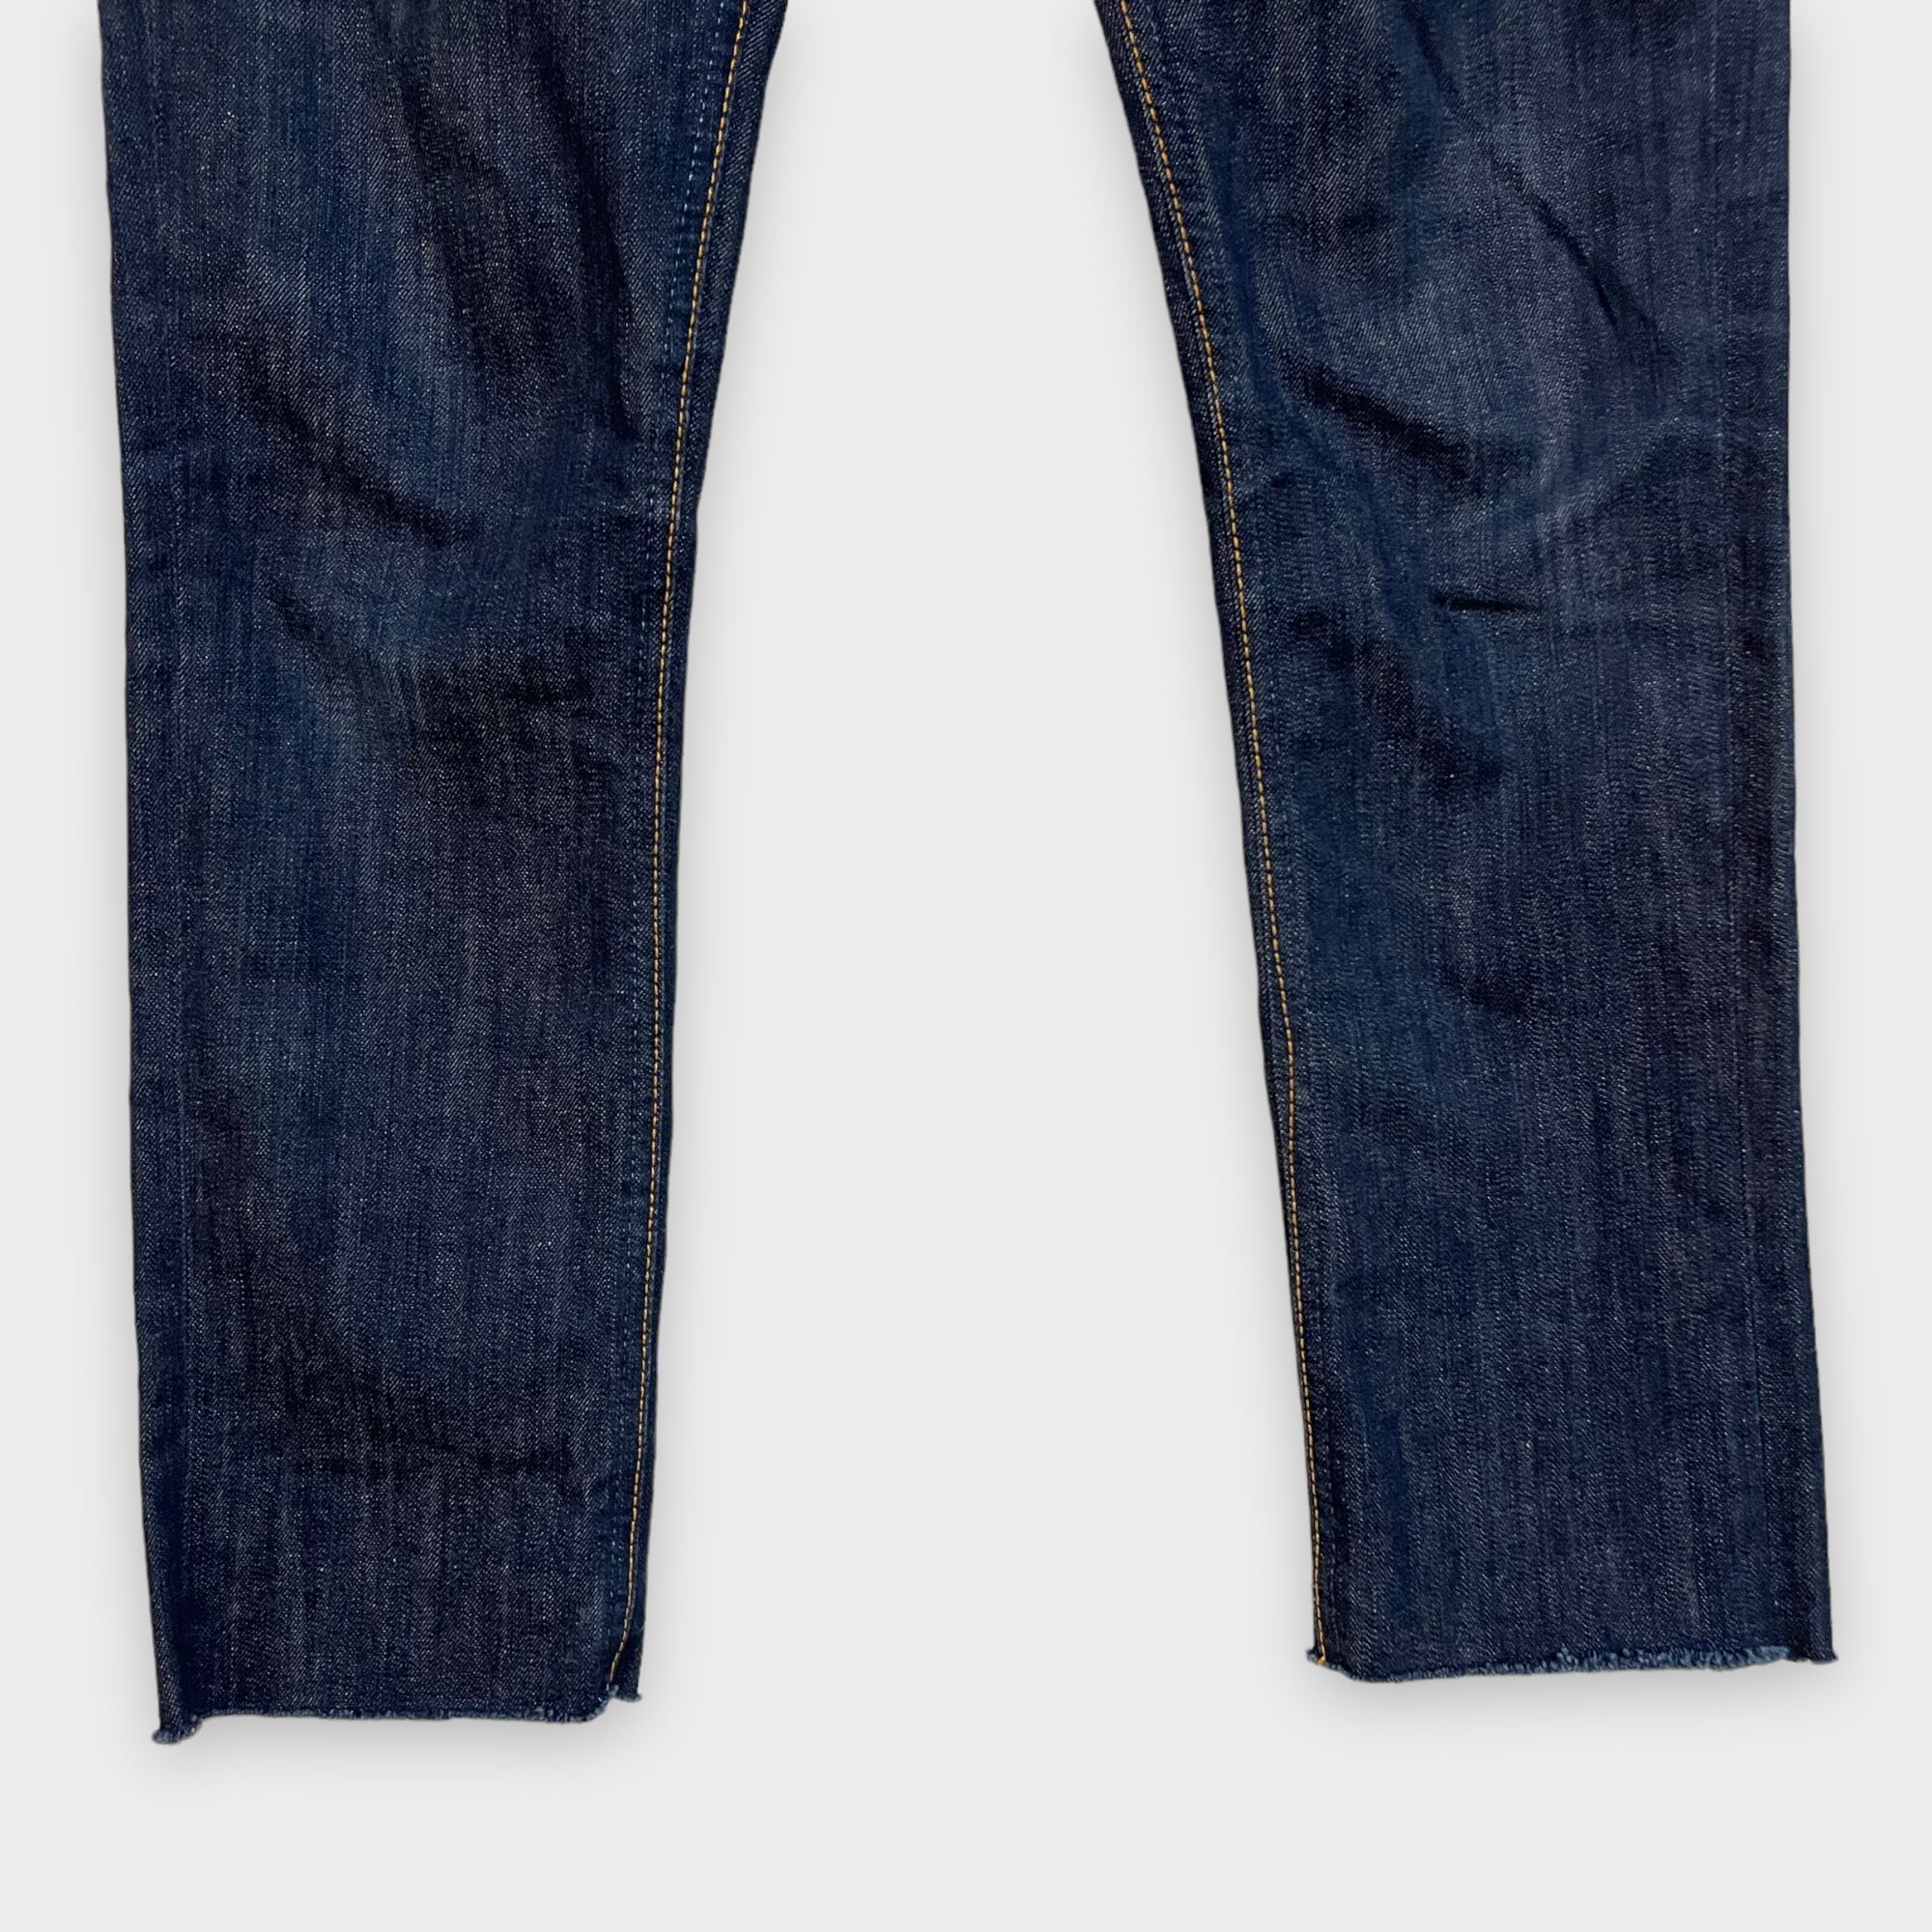 Nudie Jeans デニムパンツ ジーンズ スリム ストレート /S359